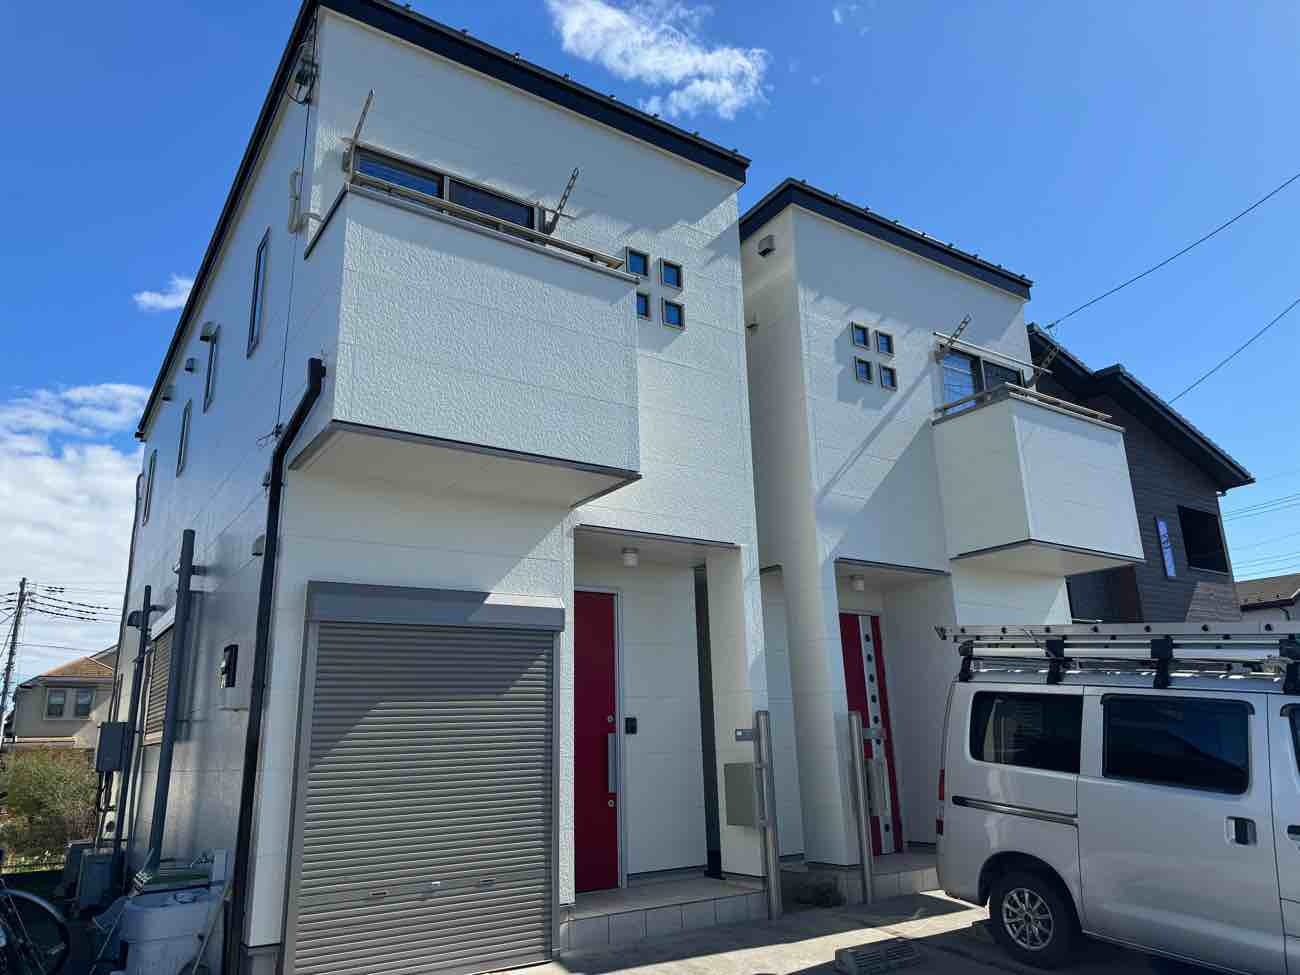 【埼玉県三郷市】I様賃貸住宅外壁屋根塗装工事が完了しました。日本ペイント パーフェクトトップ 画像